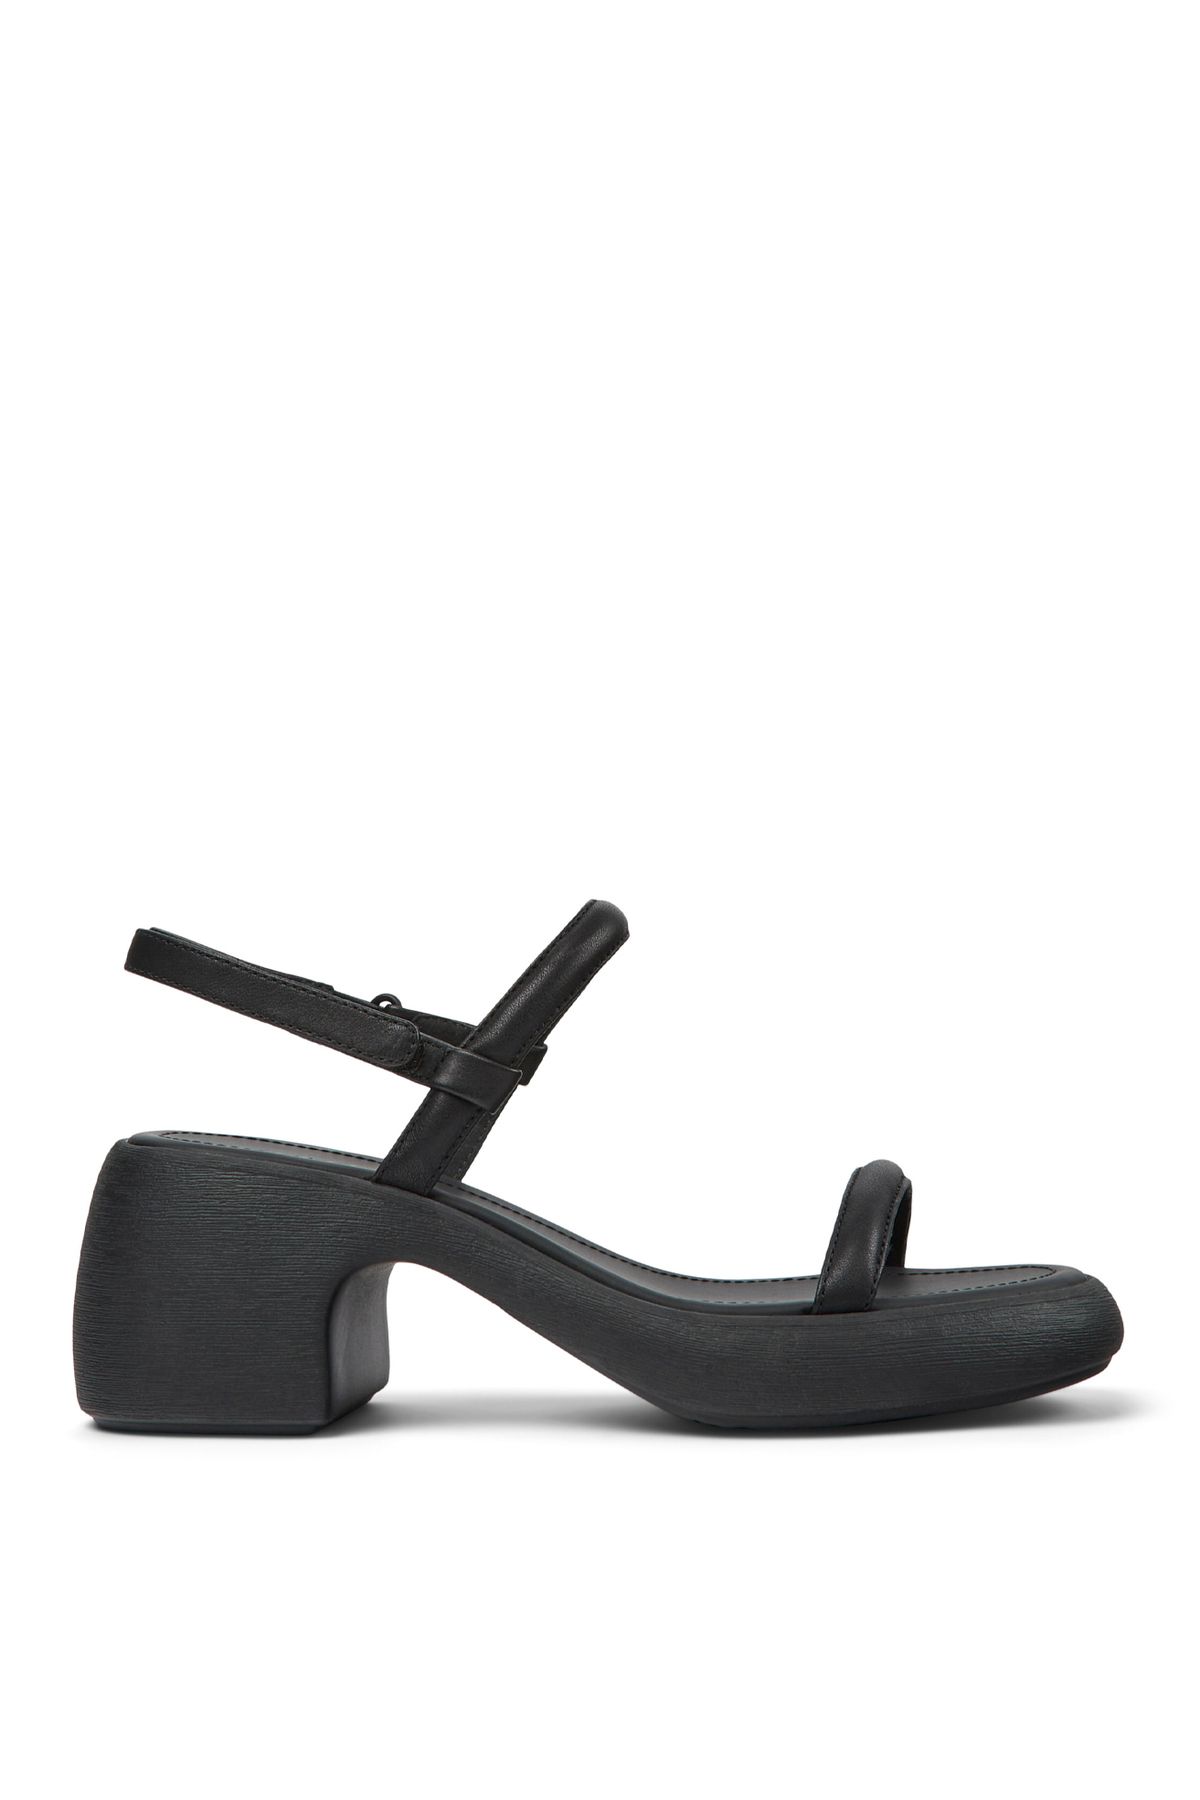 CAMPER Siyah Kadın Deri Topuklu Ayakkabı K201596-001